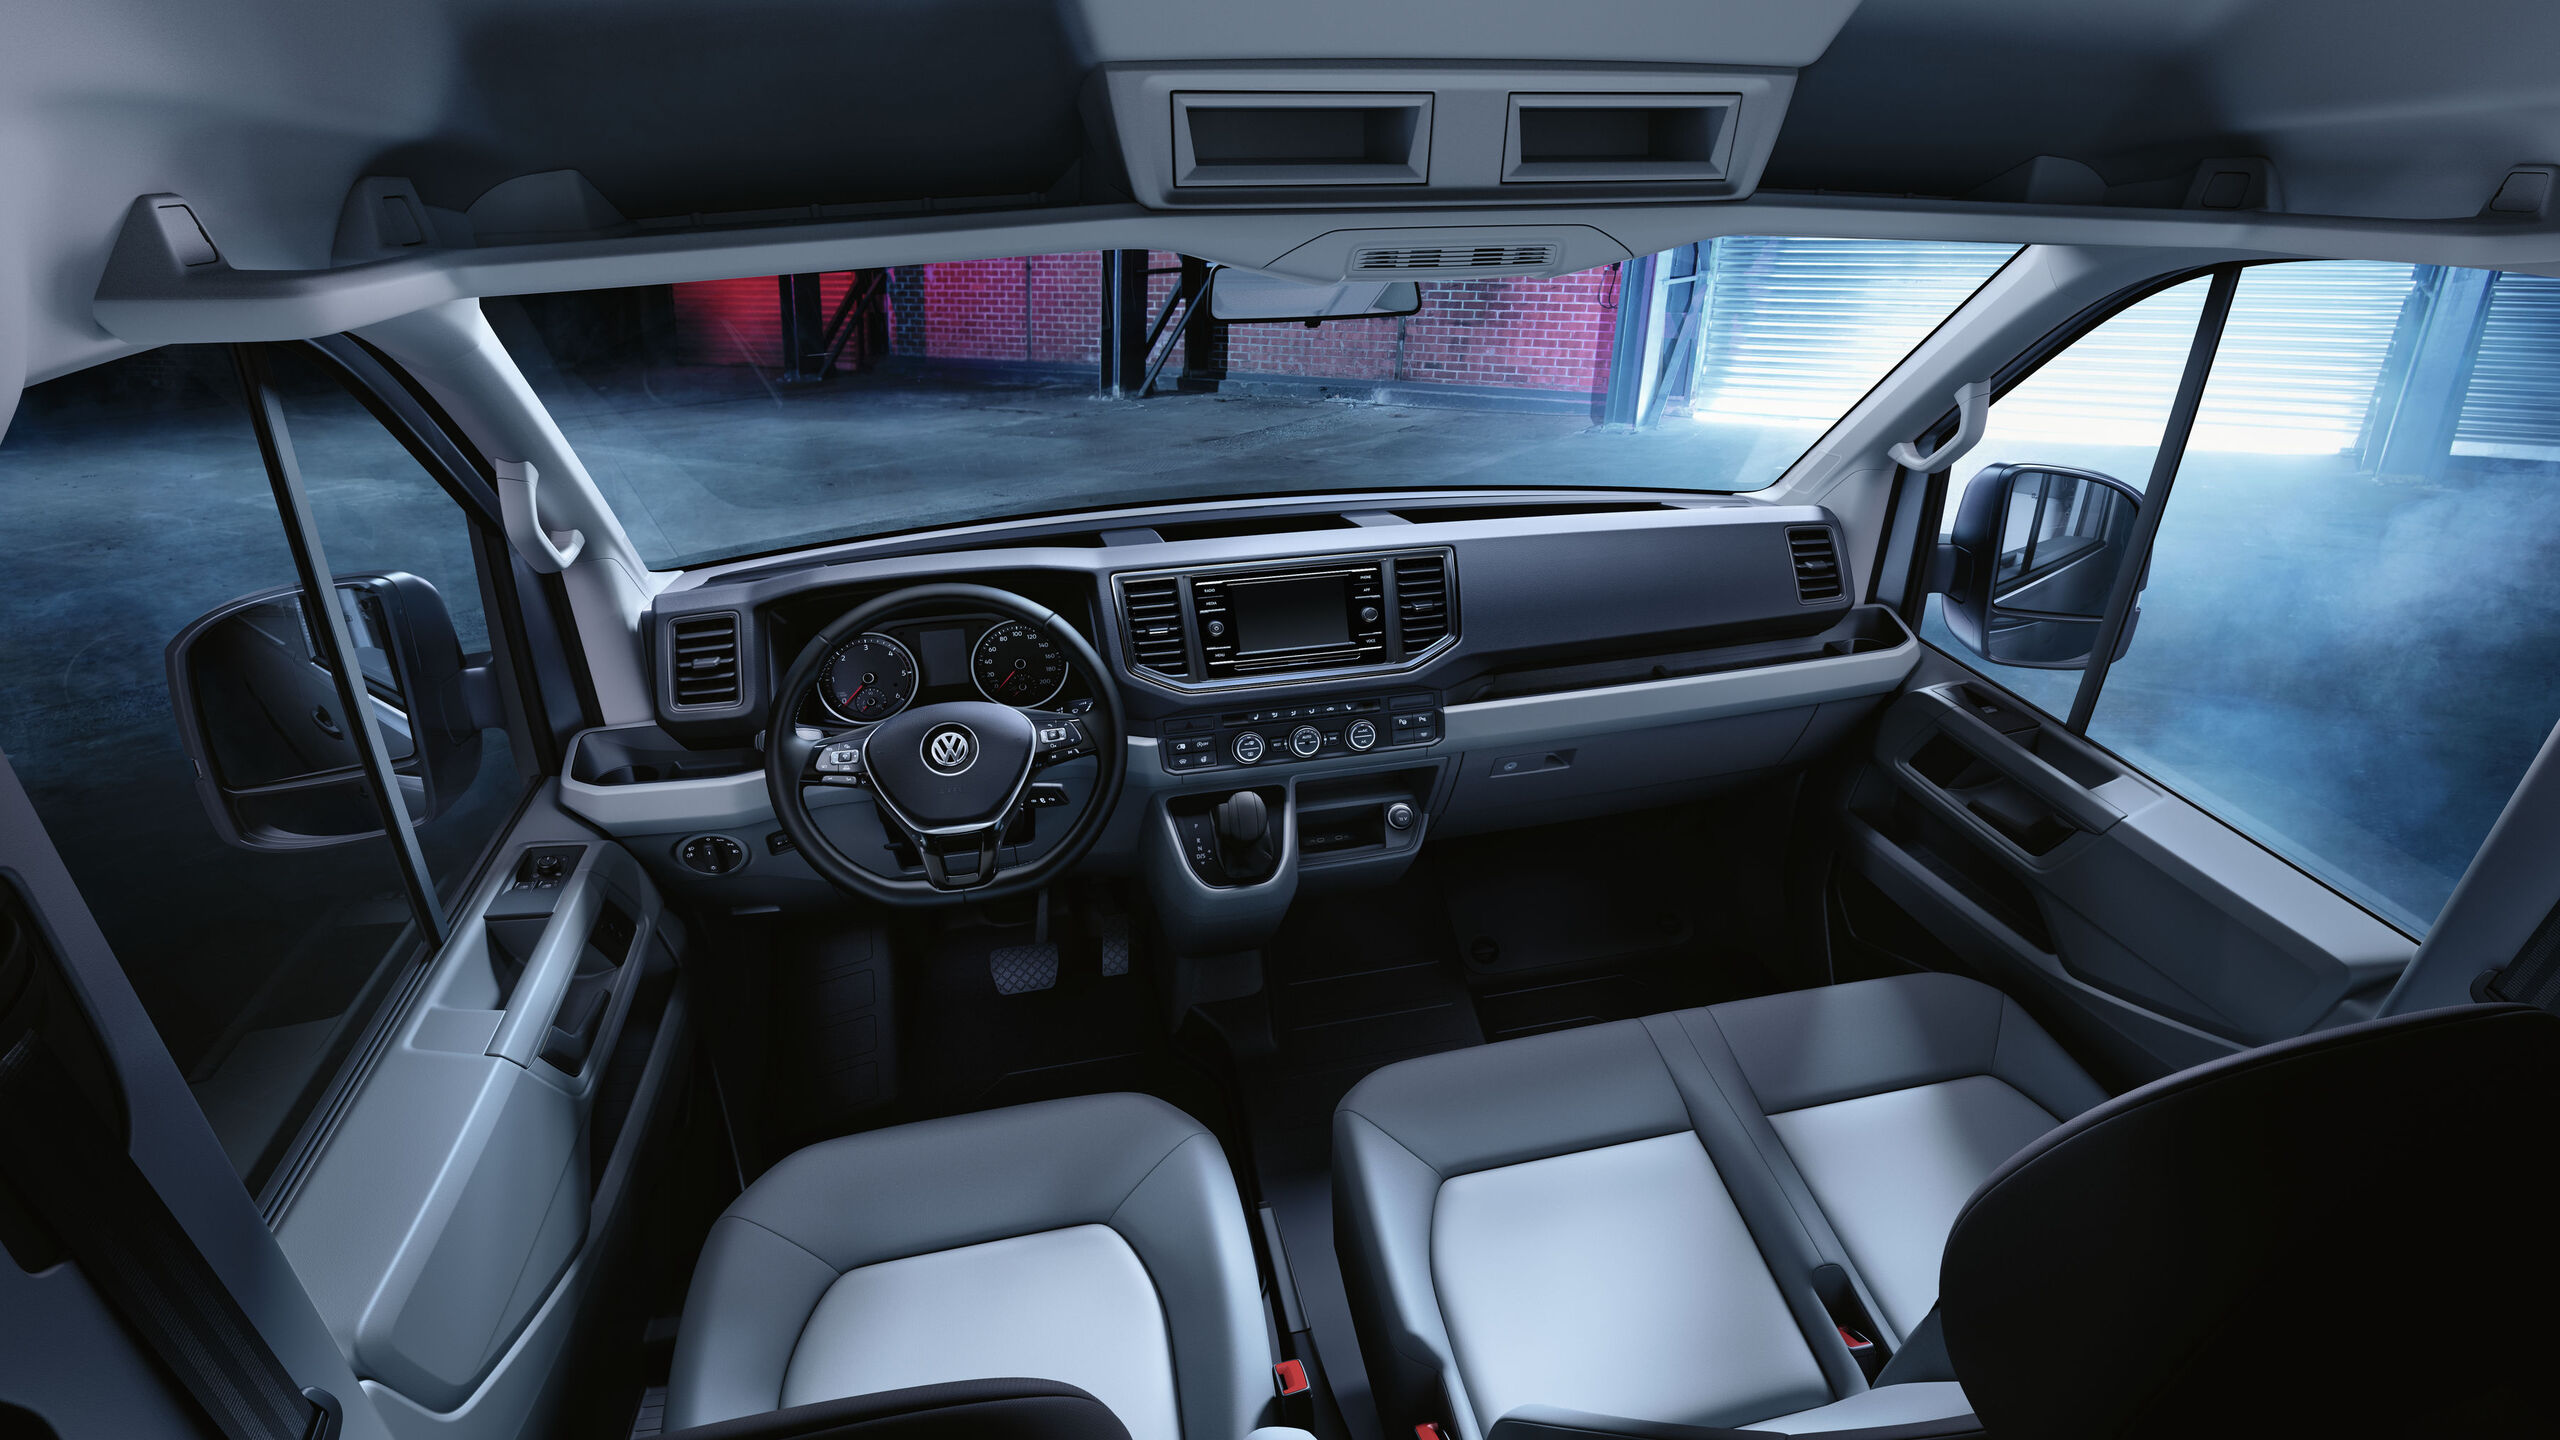 Uma visão da cabina do condutor do VW Crafter com inúmeras arrumações e compartimentos.